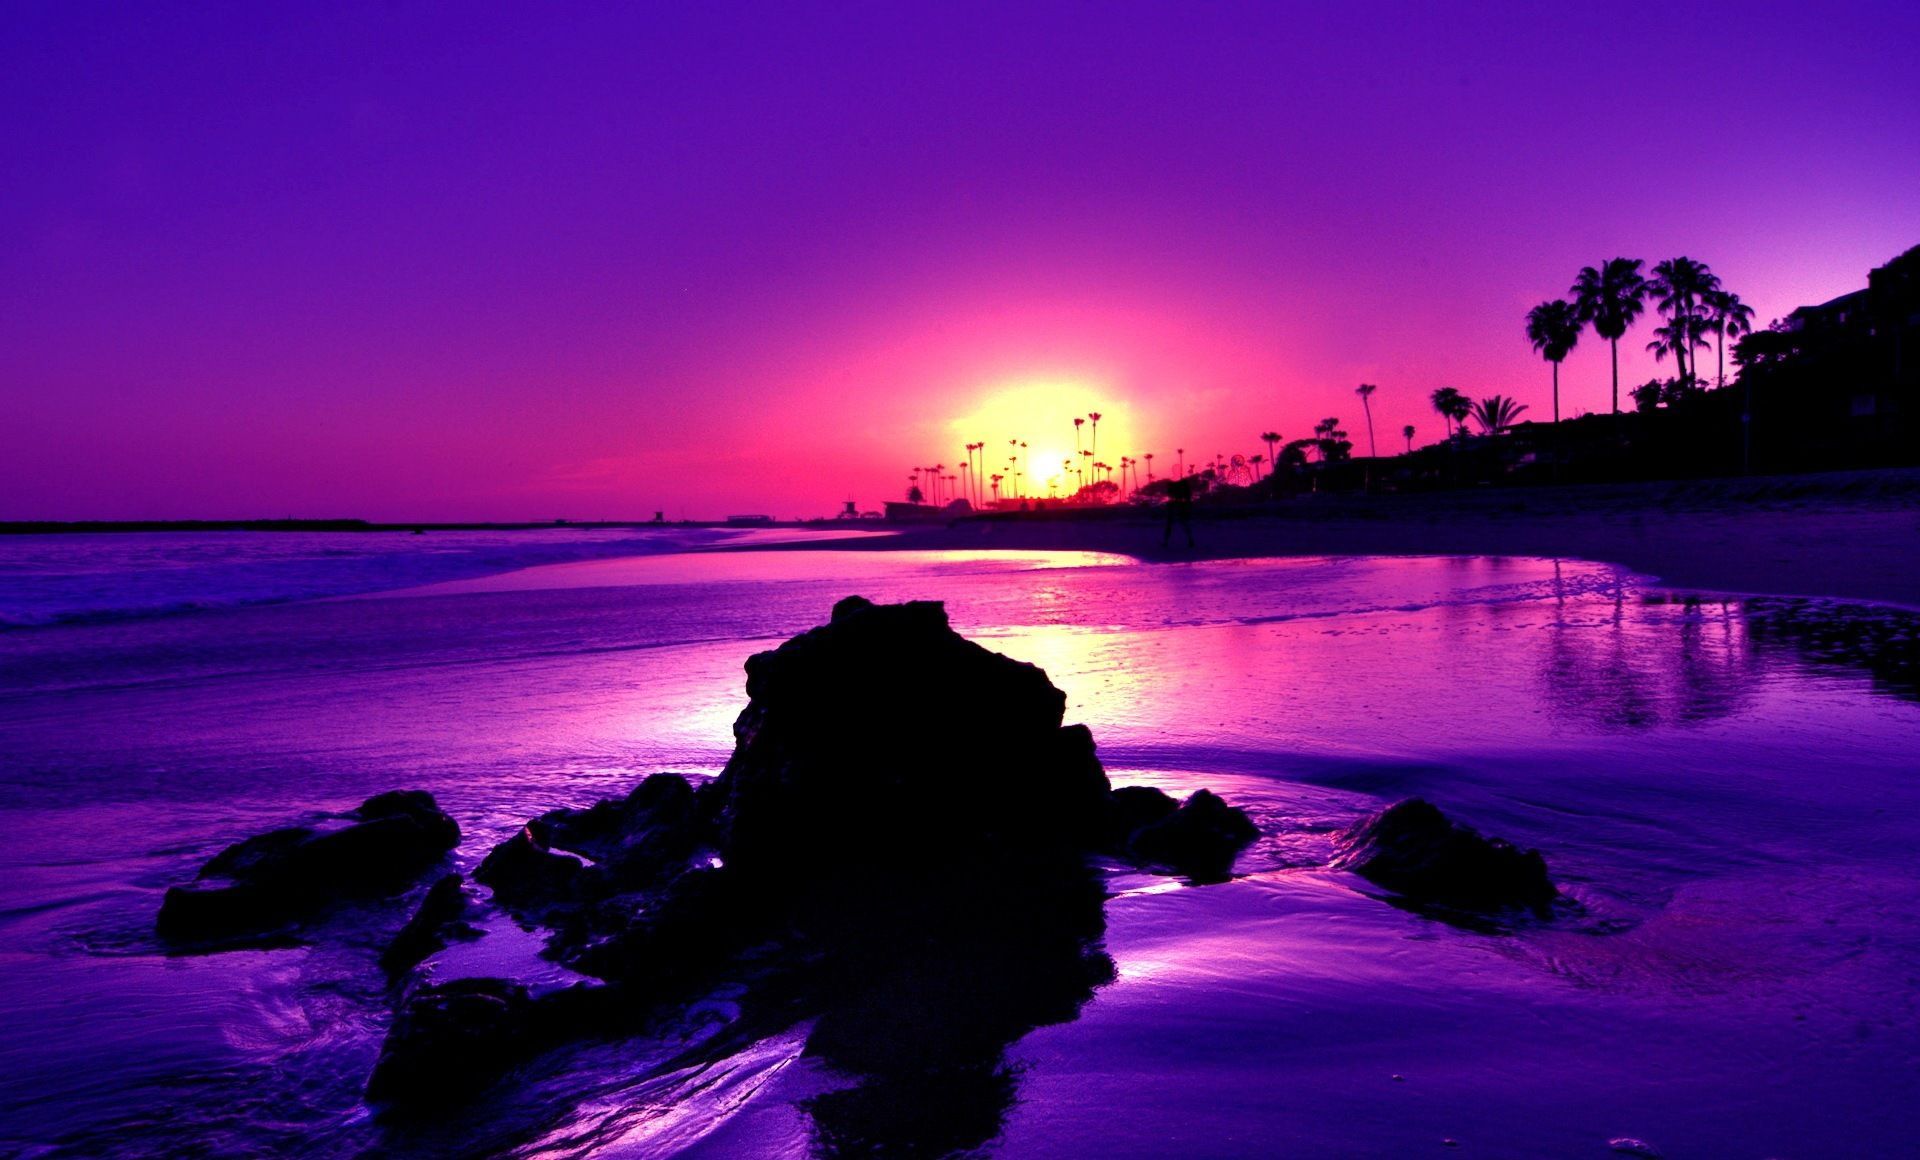 Purple Beach Sunrise Desktop Wallpapers 4k Hd Purple Beach Sunrise Desktop Backgrounds On Wallpaperbat